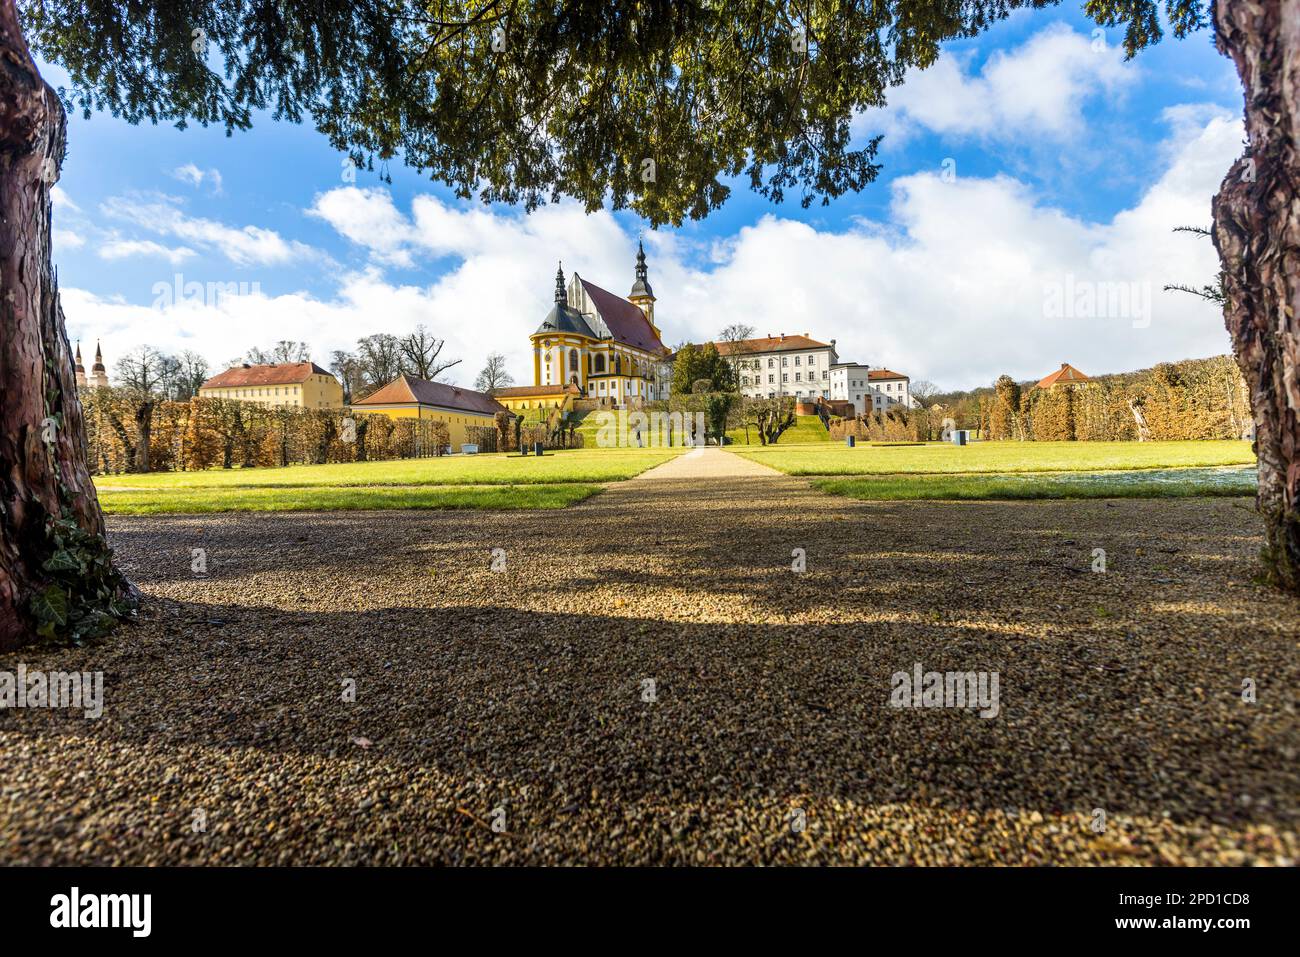 Der Klostergarten diente als Rückzugsort für die Zisterziensermönche der Abtei Neuzelle. Der Klostergarten gilt als der einzige historische Barockgarten im Bundesstaat Brandenburg. Barockkloster Neuzelle, Deutschland Stockfoto